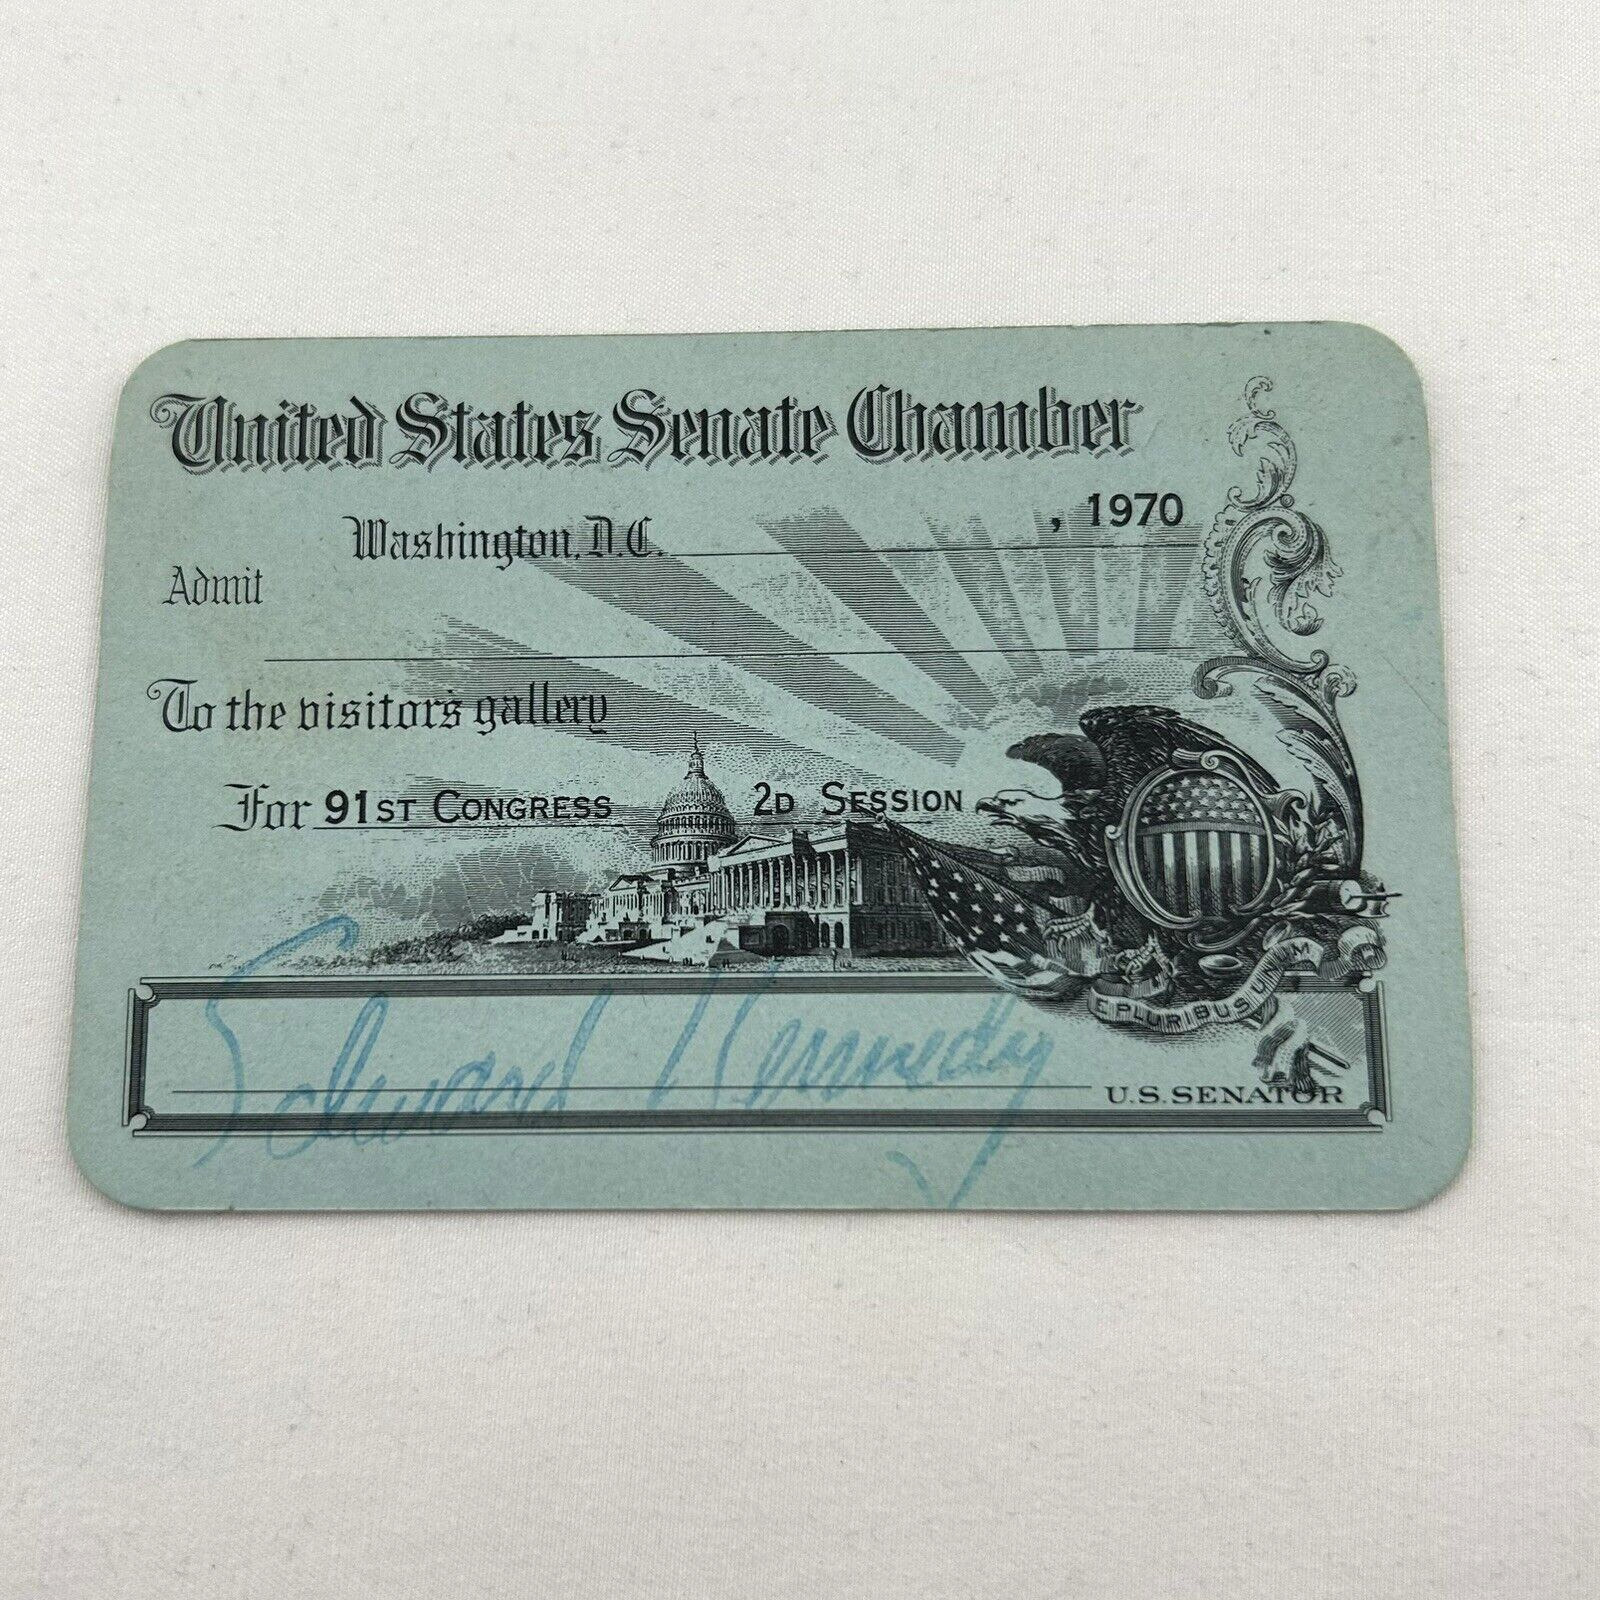 United States Senate Chamber Pass Edward Kennedy 1970